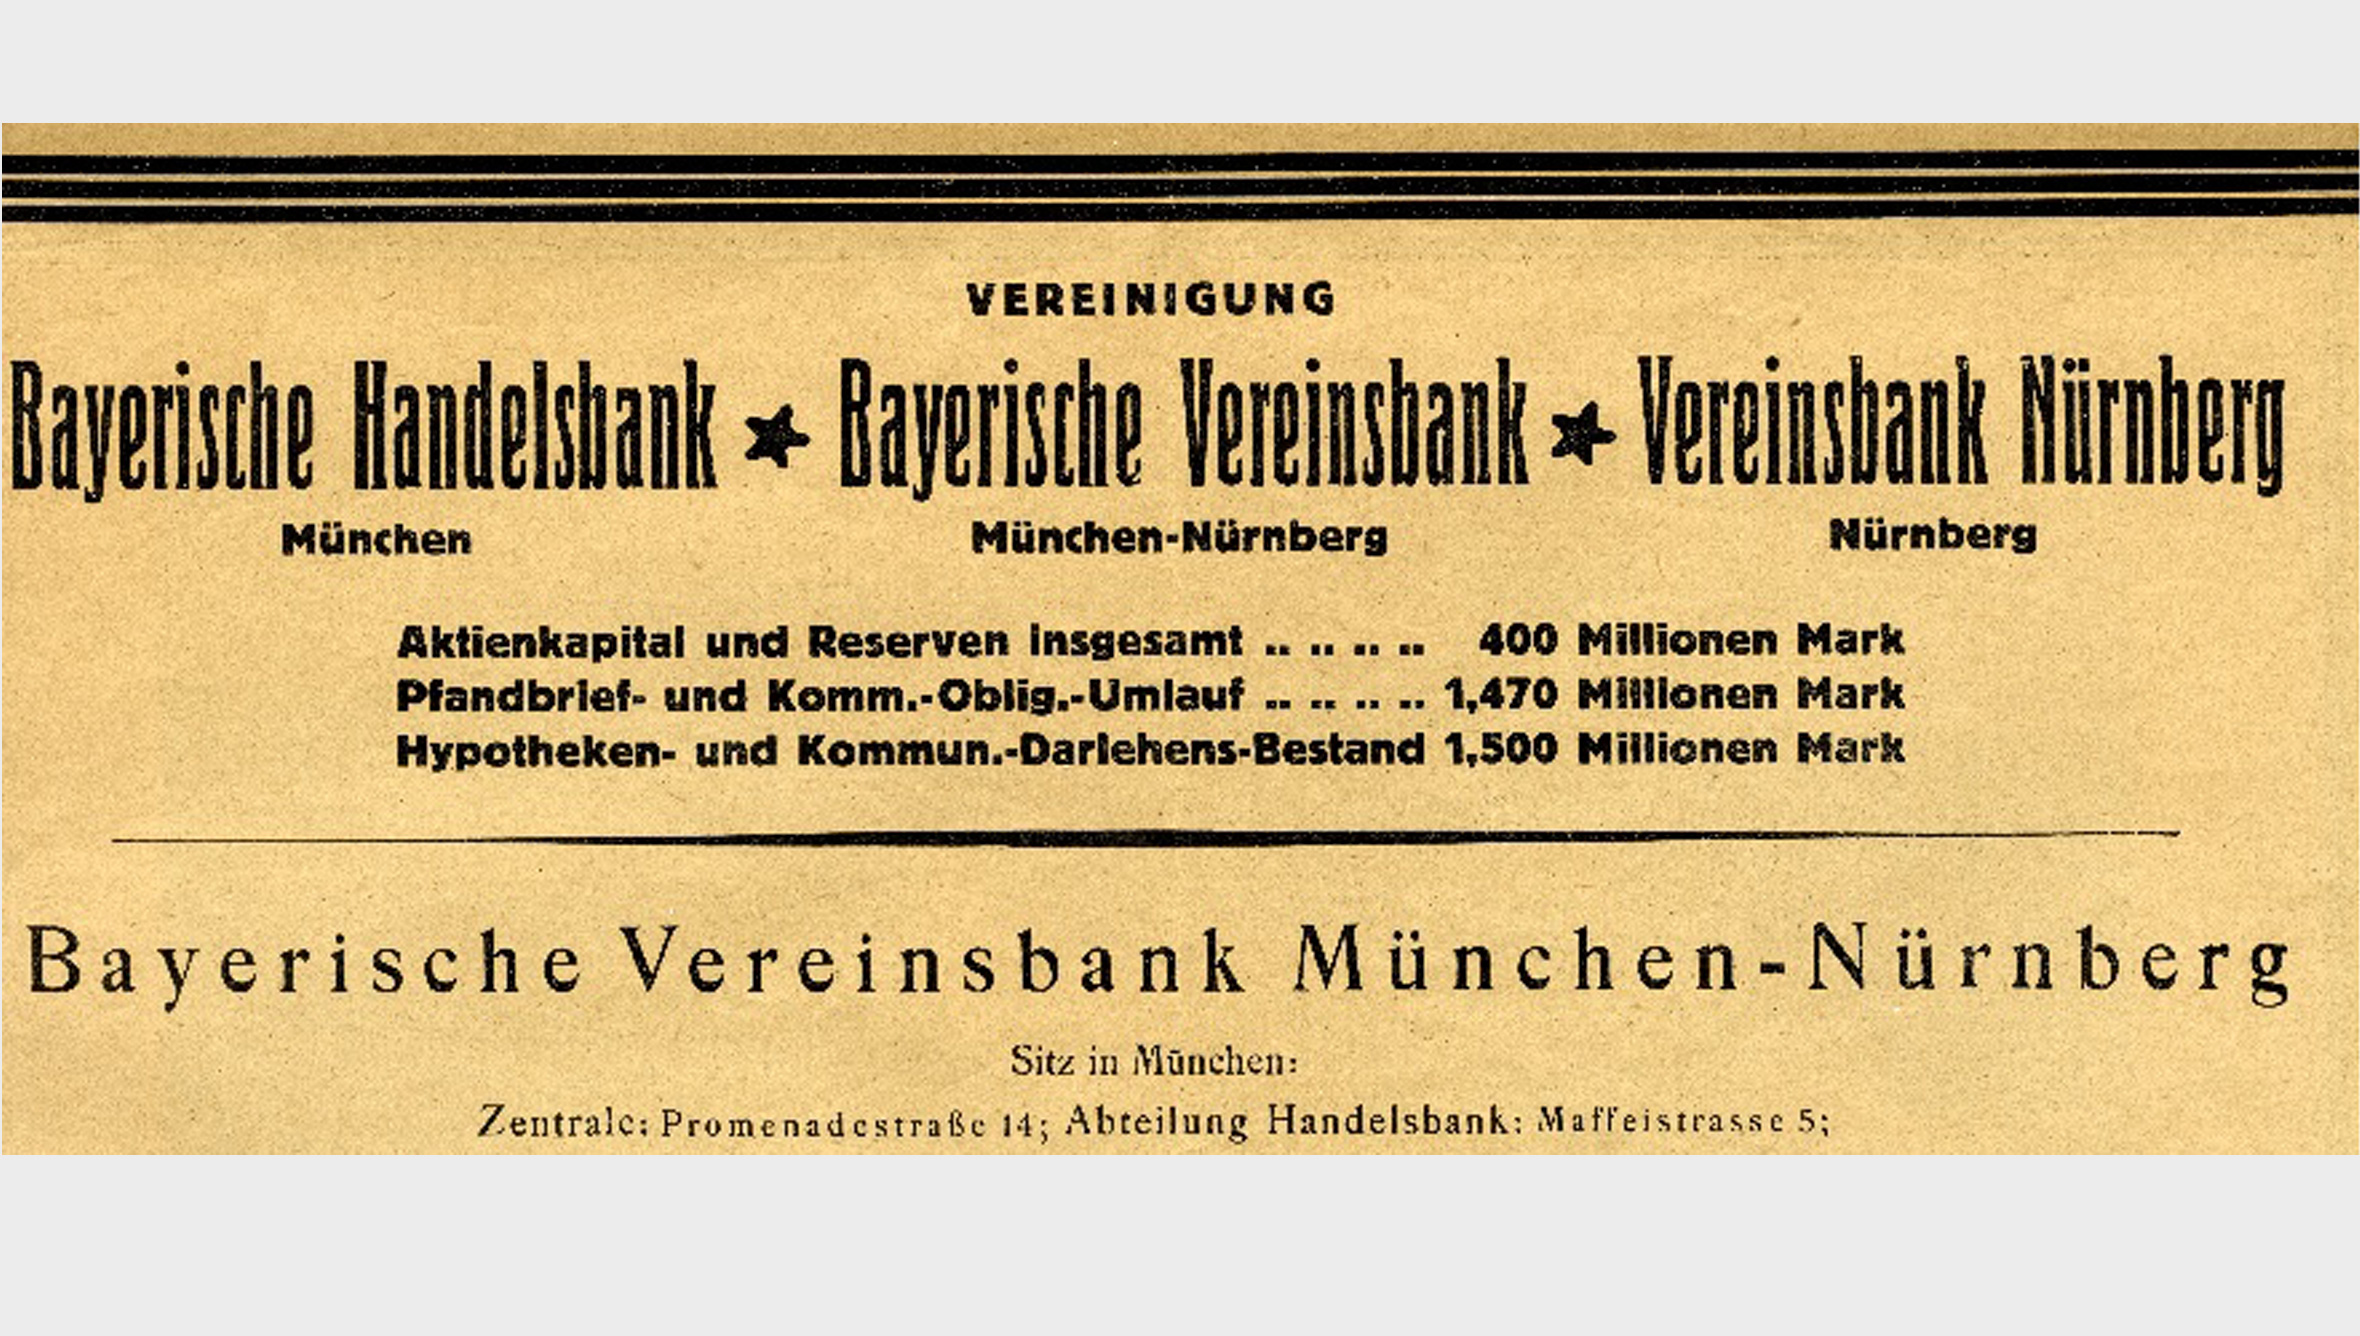 1920/21 übernahm die Bayerische Vereinsbank die Bankabteilungen der Bayerischen Handelsbank und der Vereinsbank in Nürnberg. Die Anzahl der Filialen erhöhte sich 1920/21 von 50 auf 129.